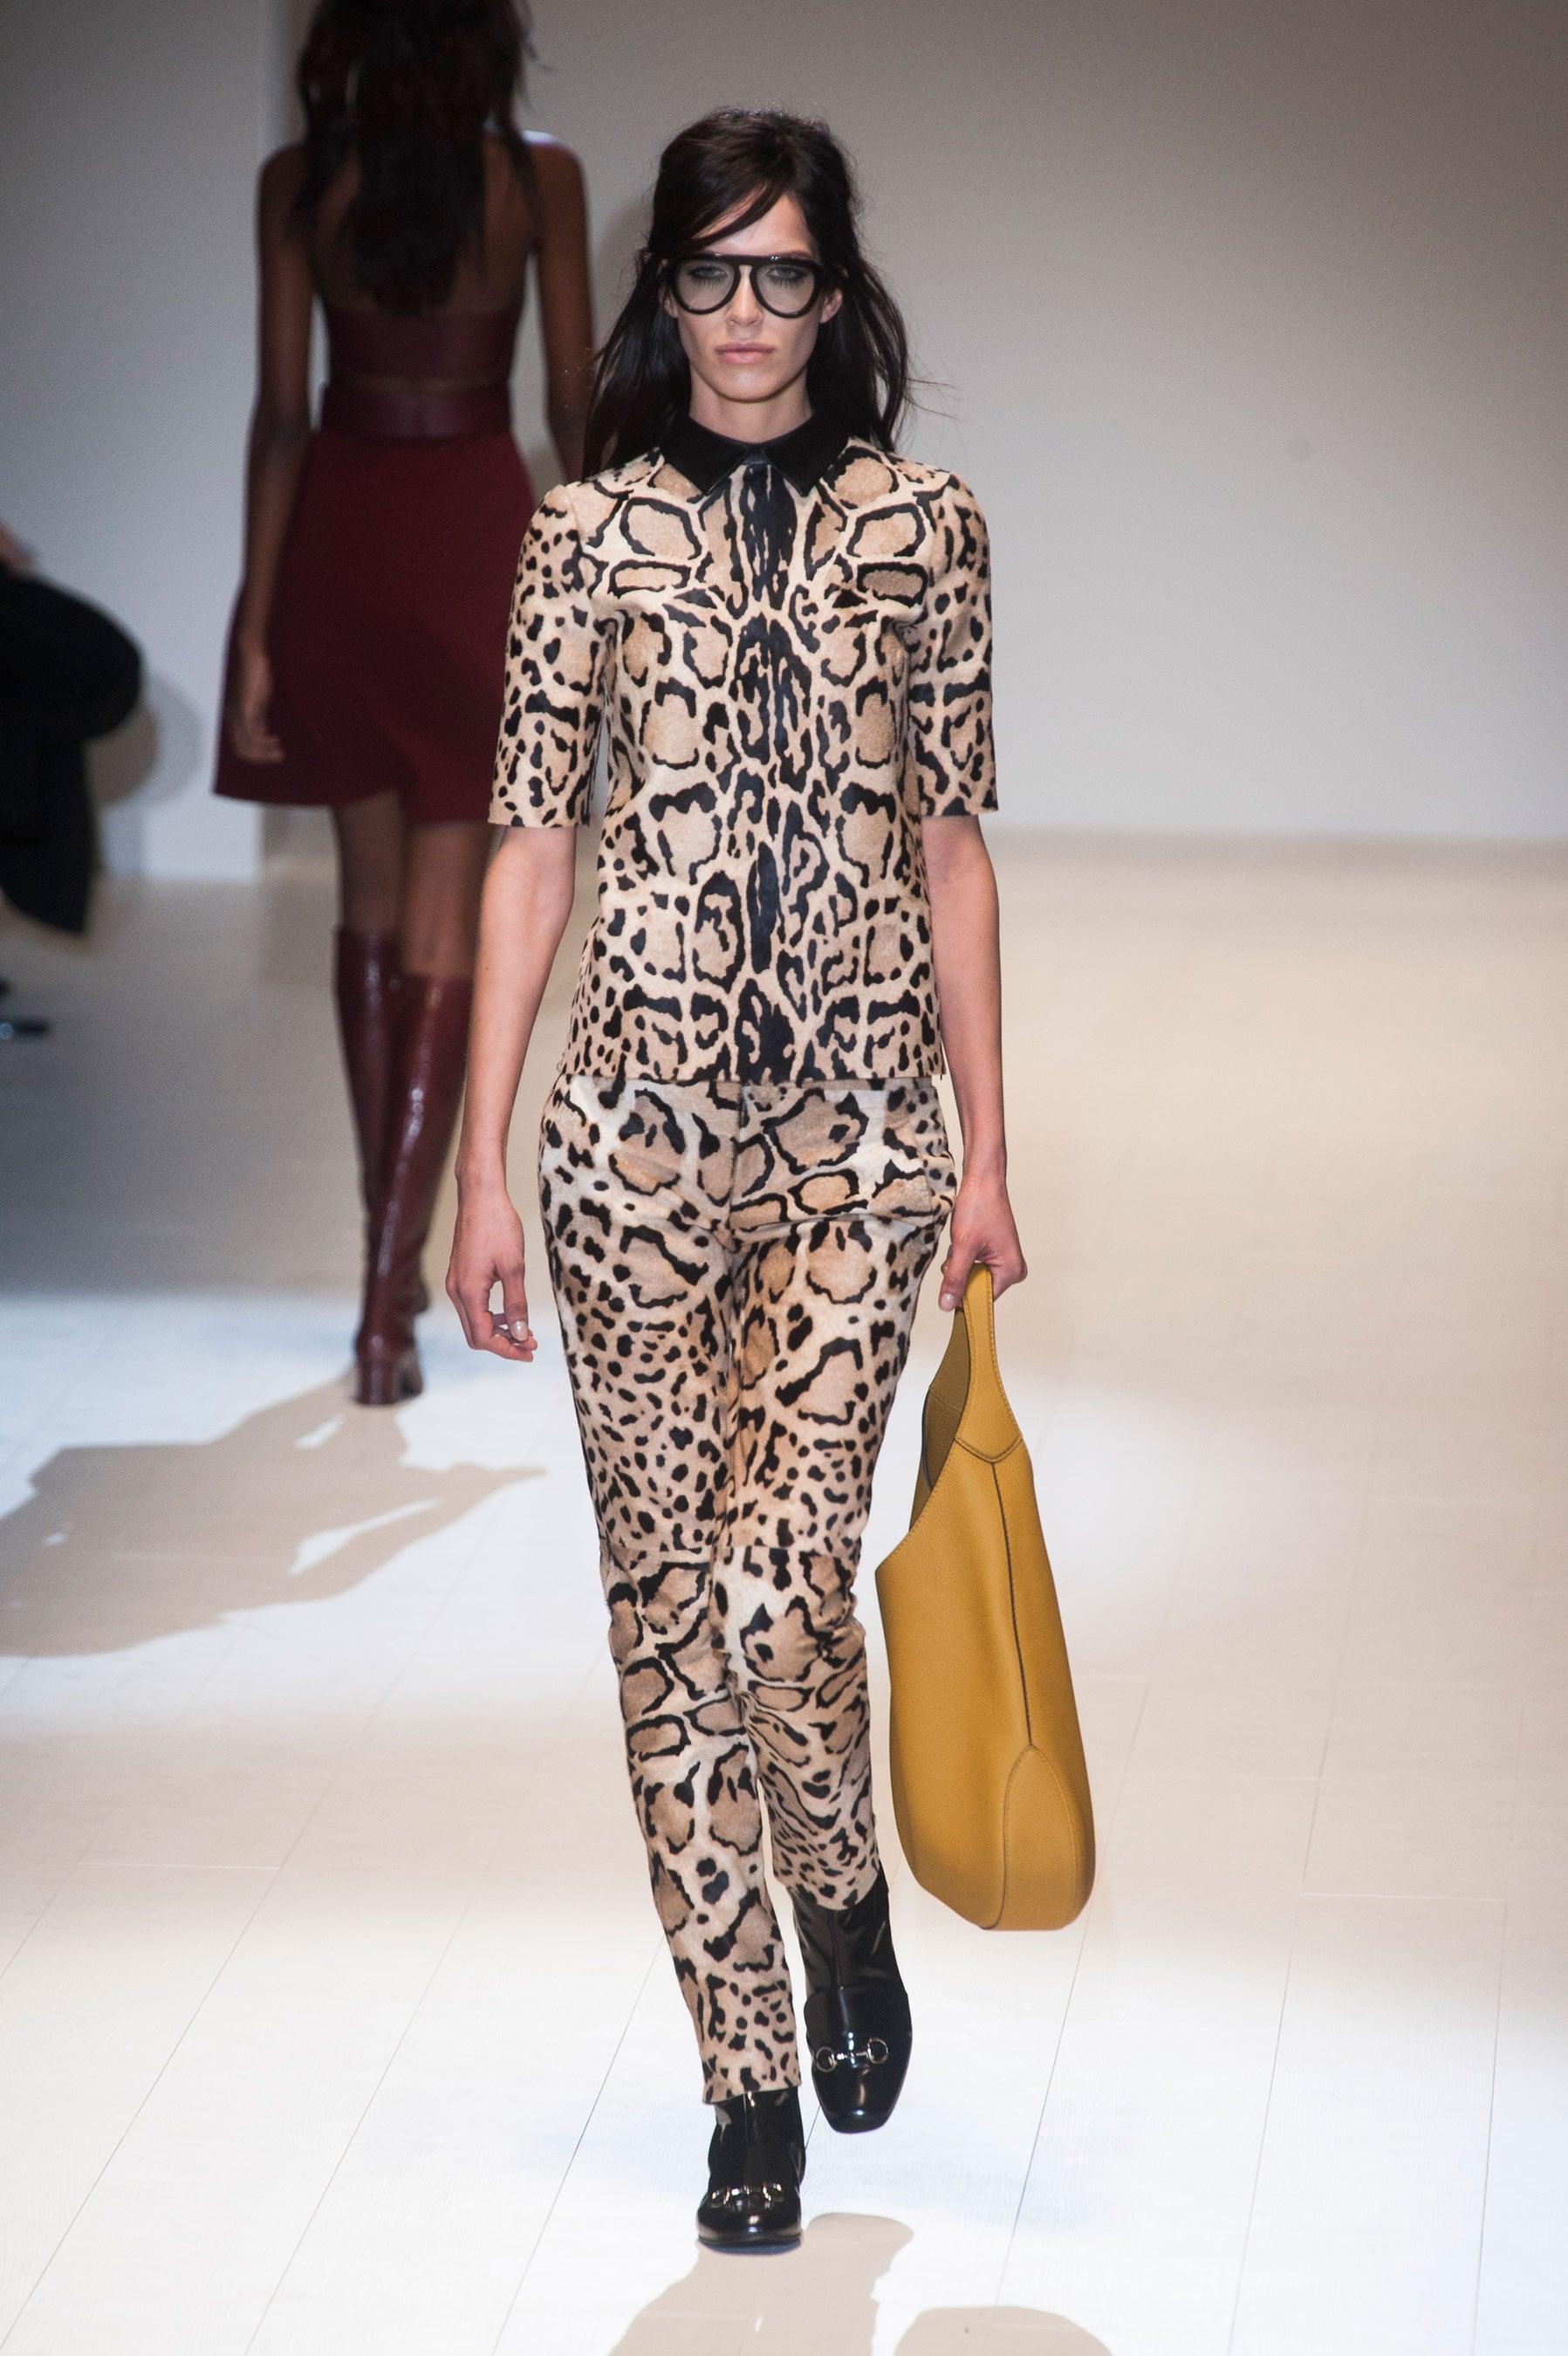 Nouveauté Gucci extra large sac Jackie O Gaga en cuir rose 3595 $ automne 2014 en vente 7